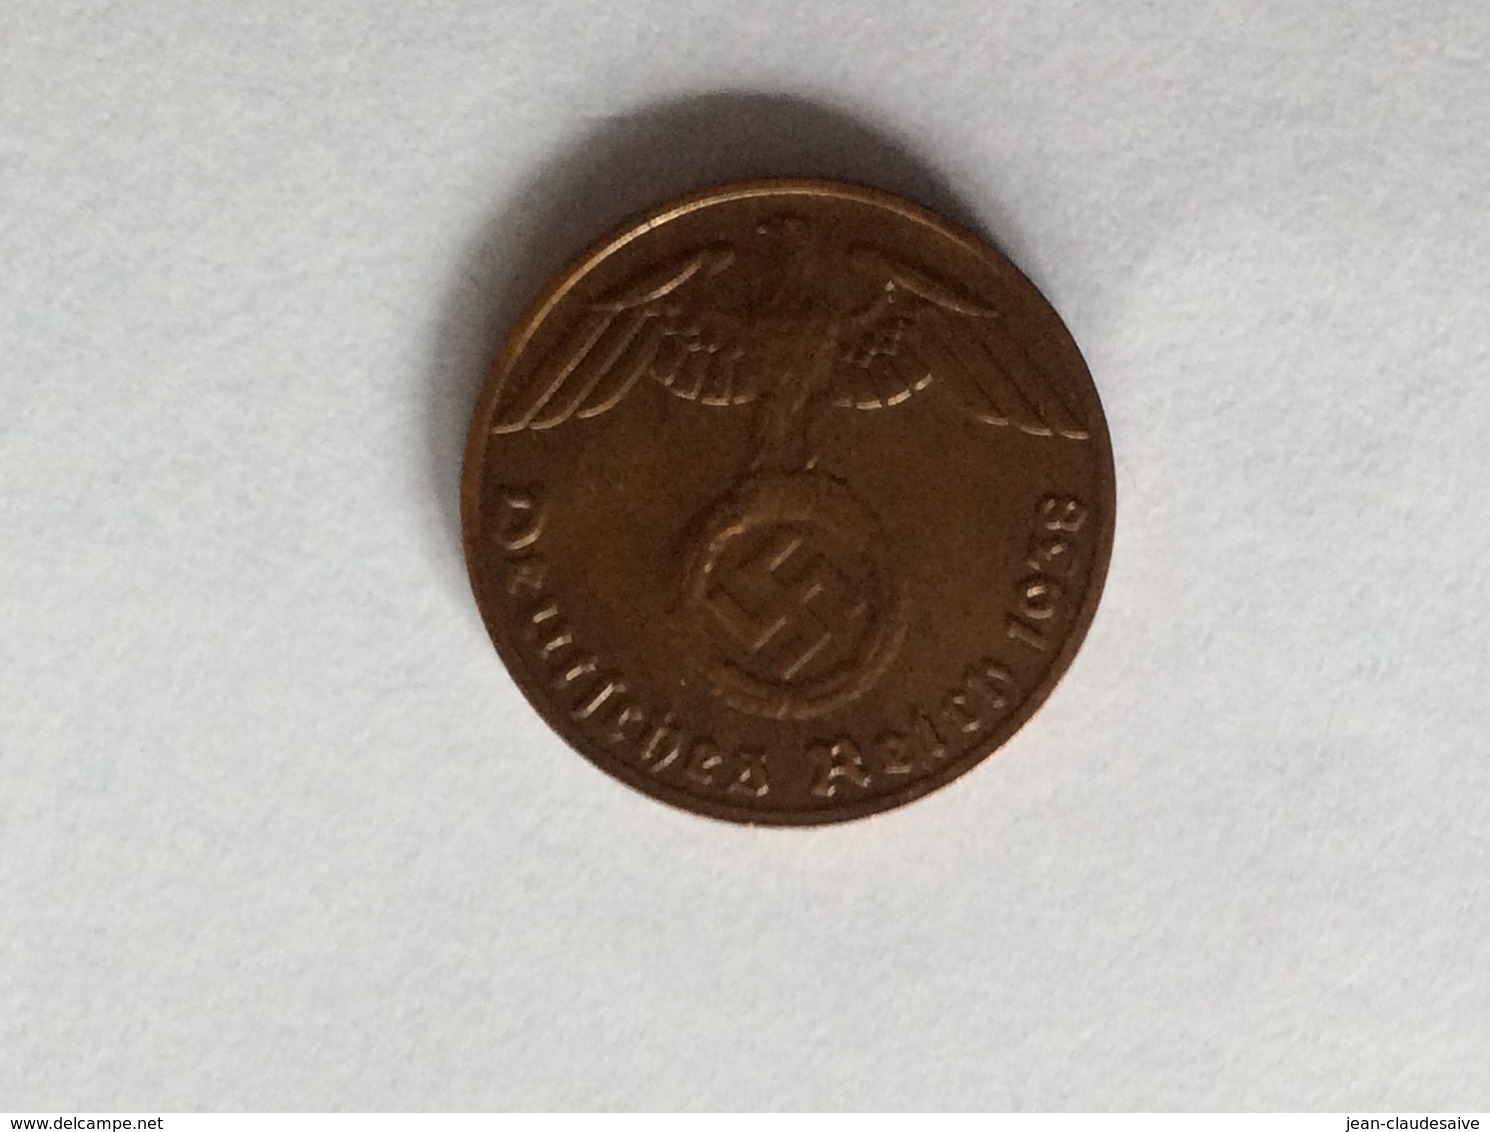 Monnaie Allemande - 1 Reichspfennig